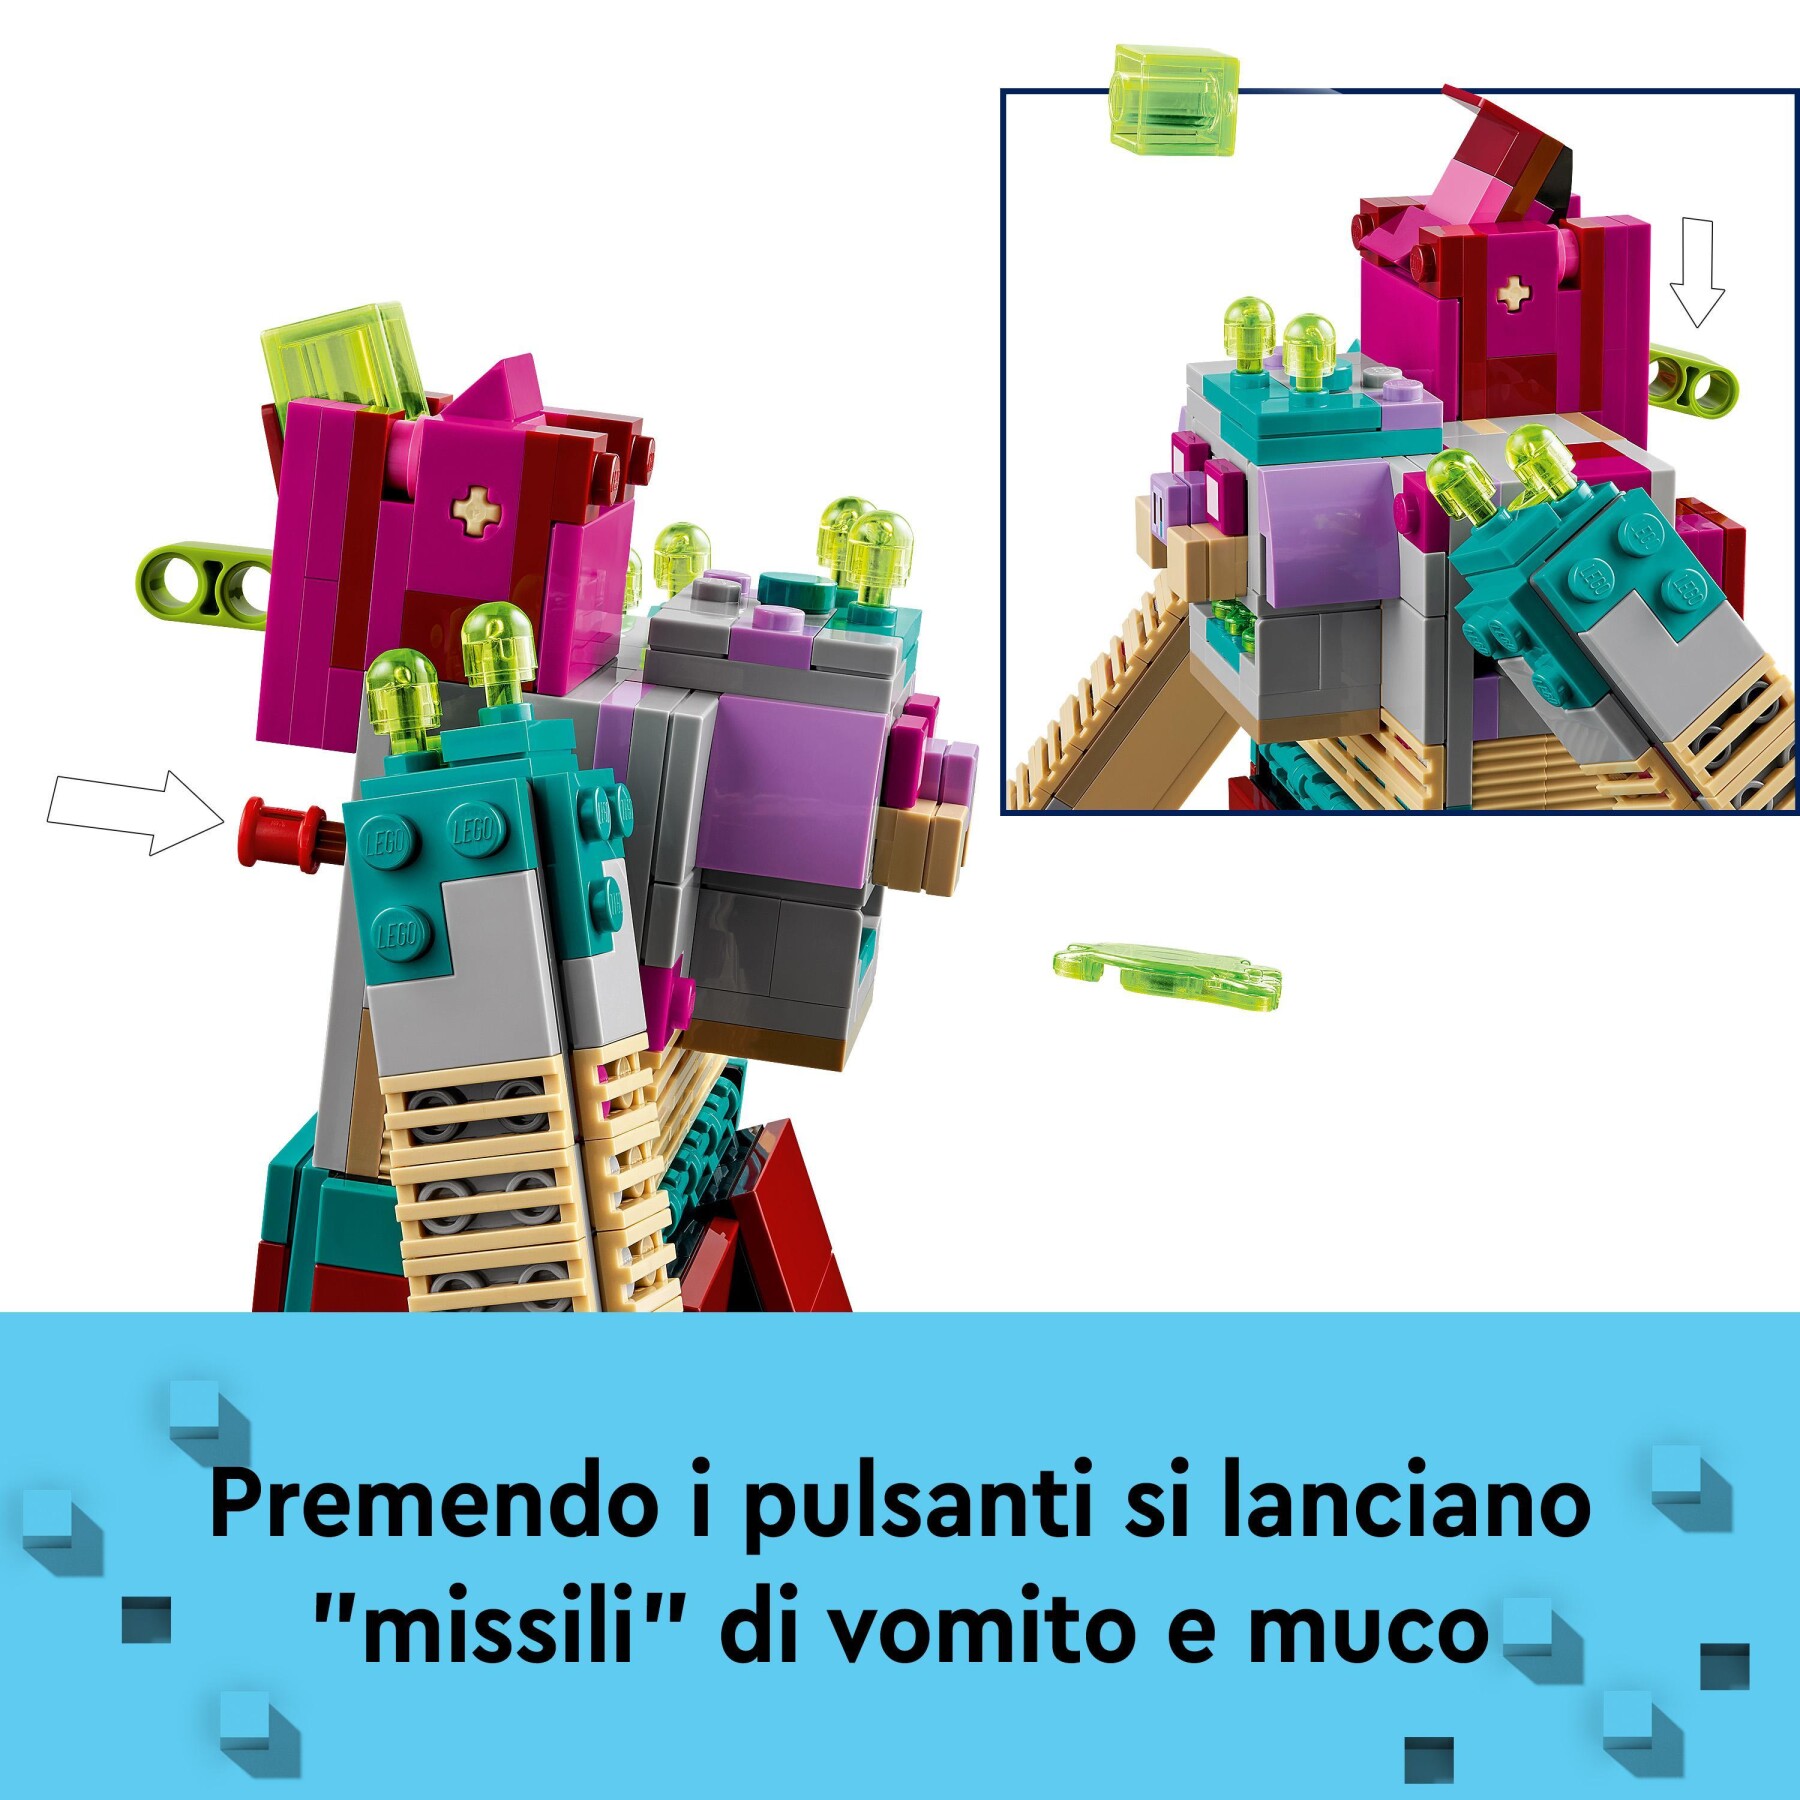 Lego minecraft 21257 legends resa dei conti con il divoratore, gioco d'azione per bambini di 8+ anni con personaggi popolari - MINECRAFT